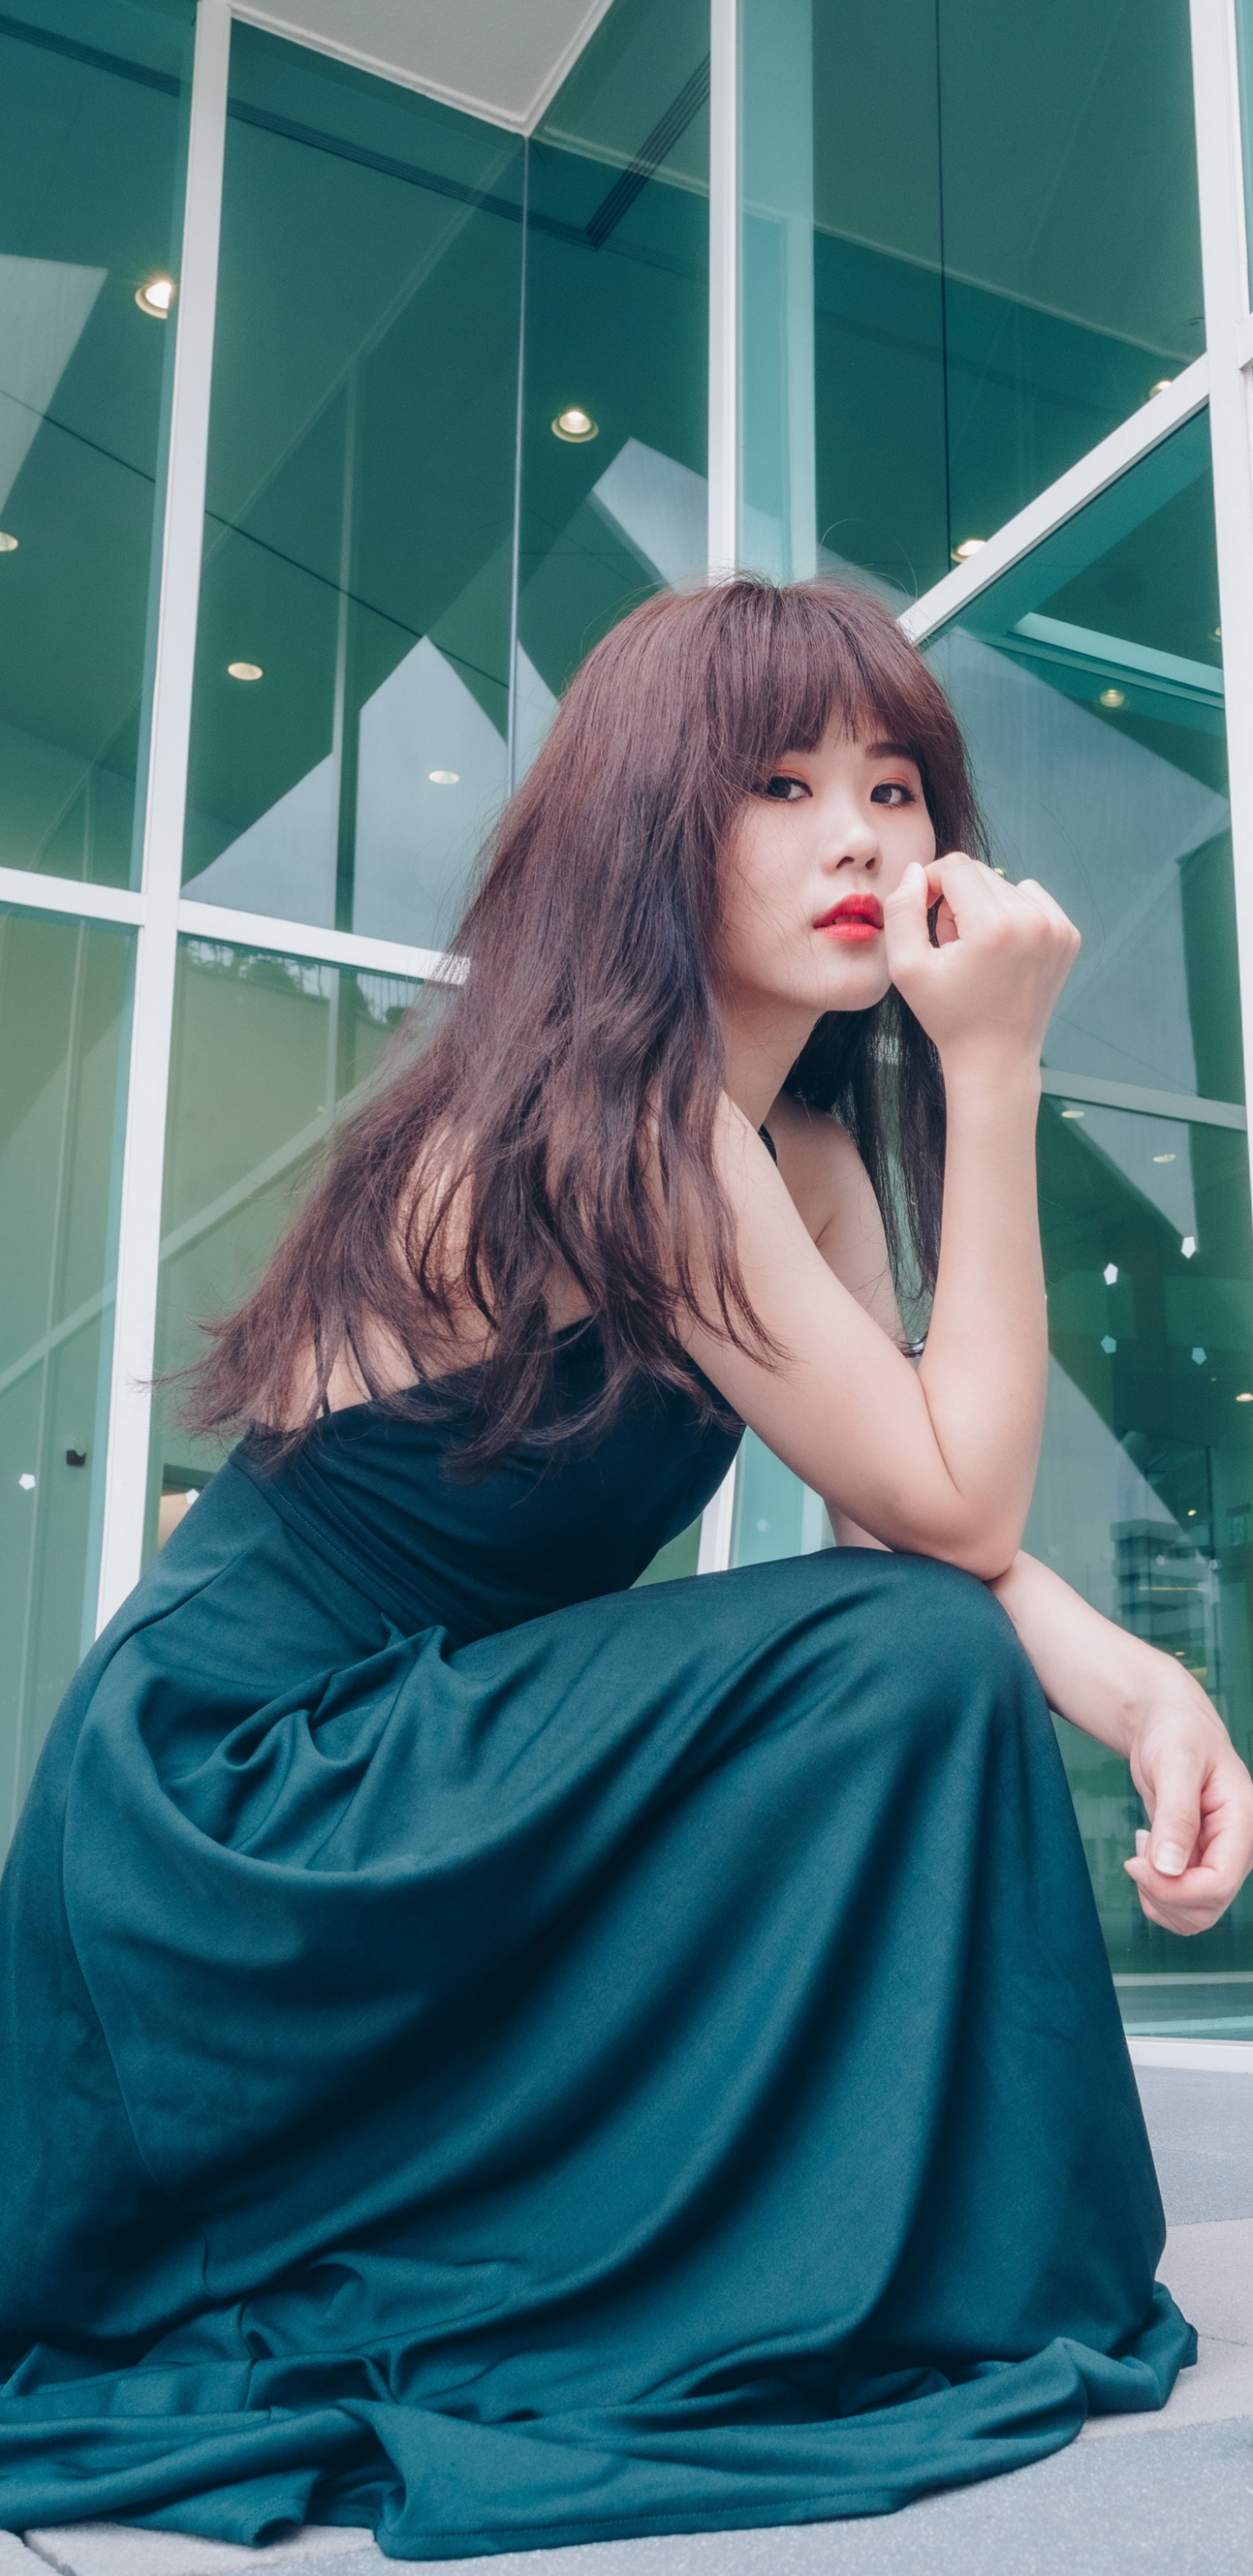 Download mobile wallpaper Brunette, Model, Women, Asian, Long Hair, Lipstick, Green Dress for free.